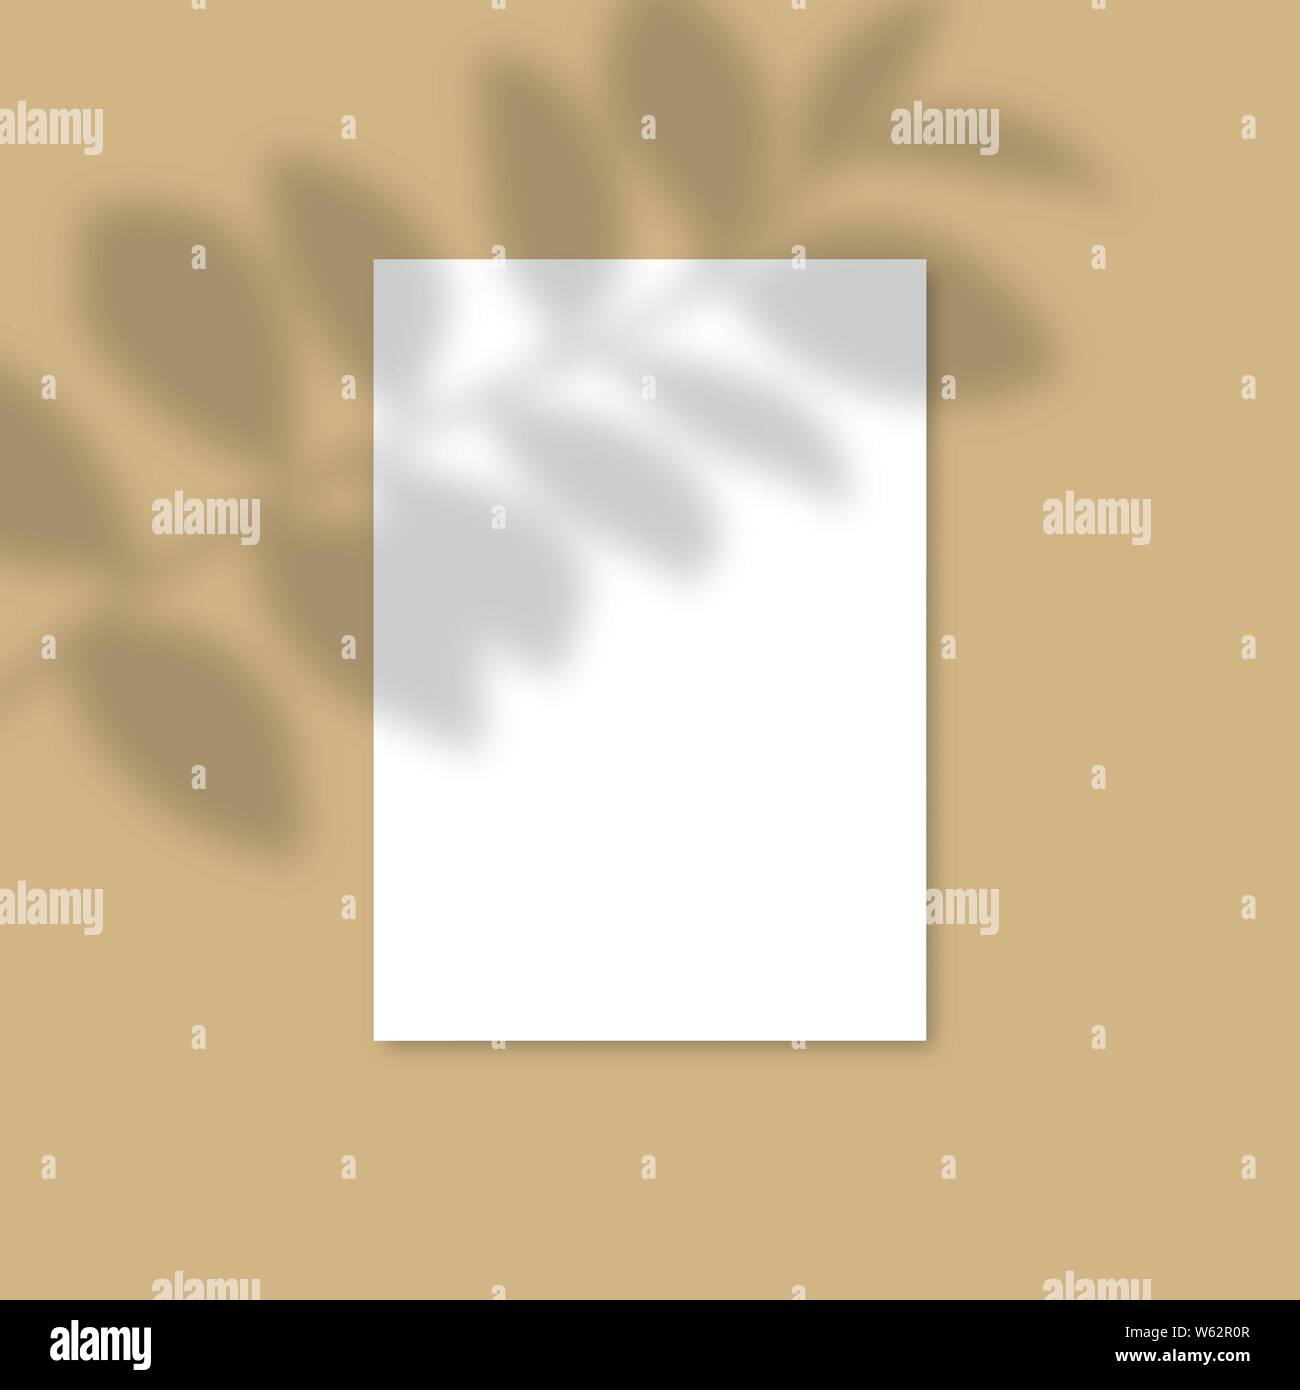 Maquette en papier A4 vertical avec des ombres réalistes superpositions feuille. Ombre d'un vecteur de plantes tropicales. Flyer, affiche, modèle en blanc dans un style moderne Illustration de Vecteur